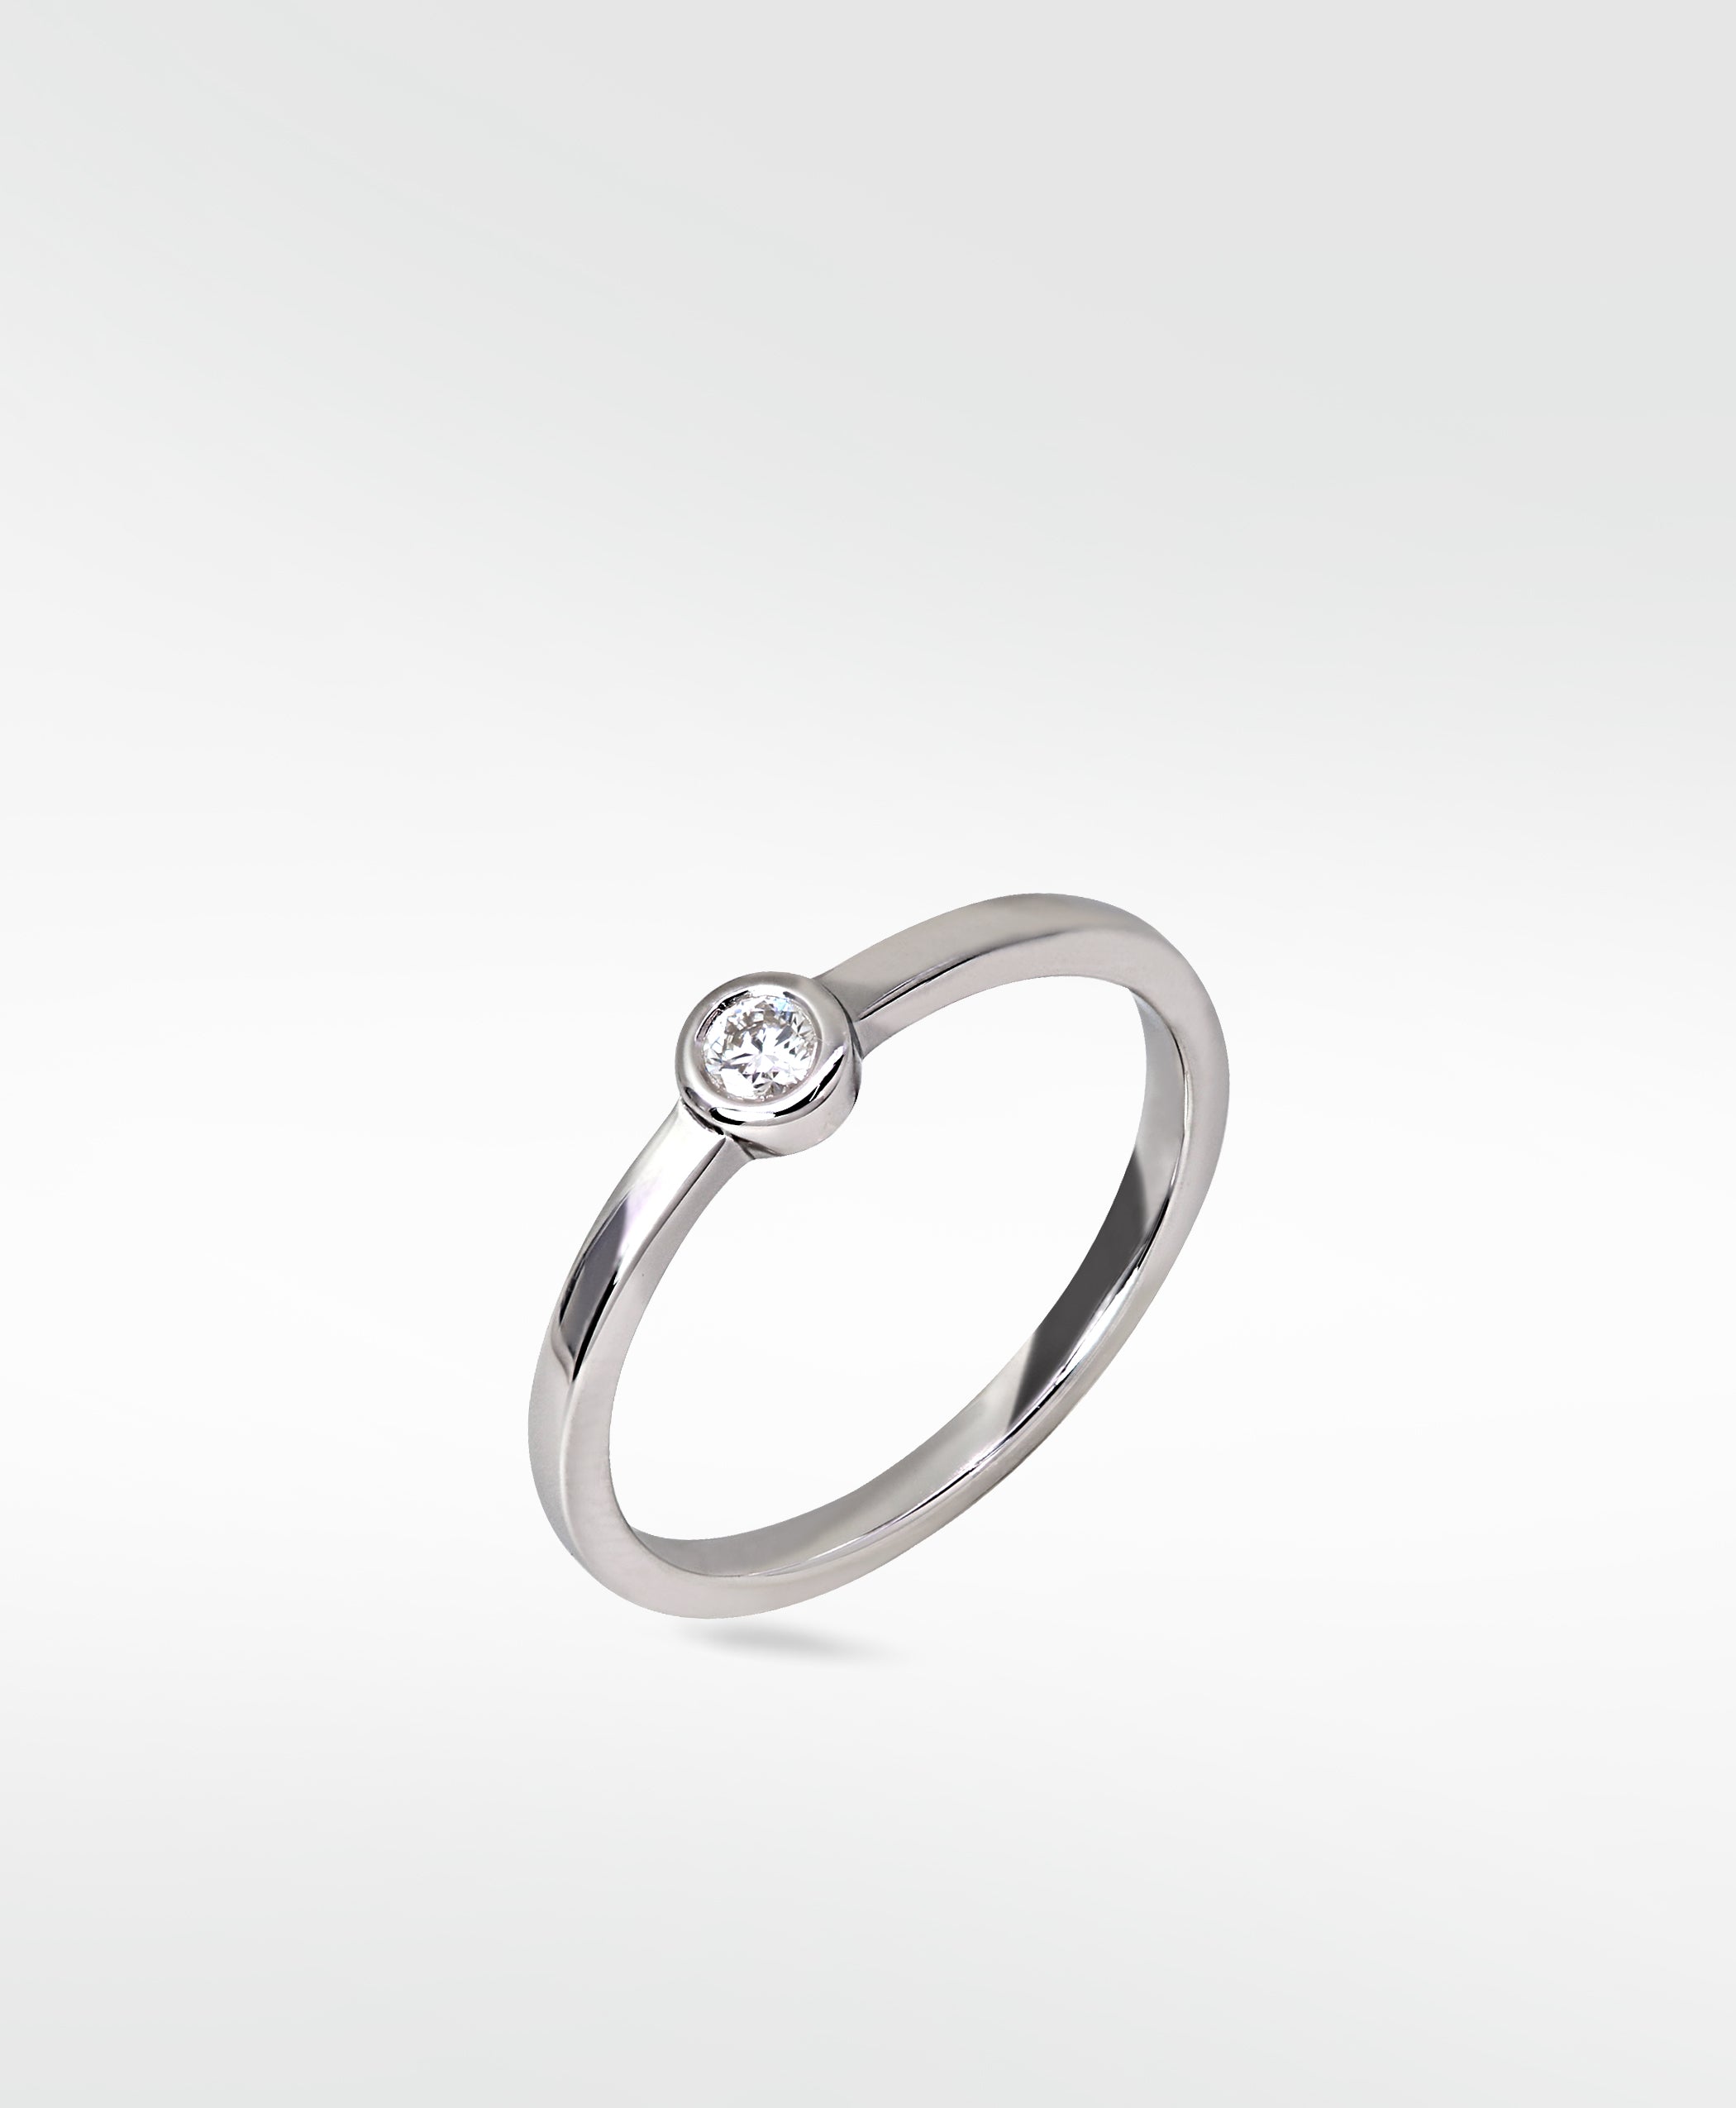 Singular Silver Ring